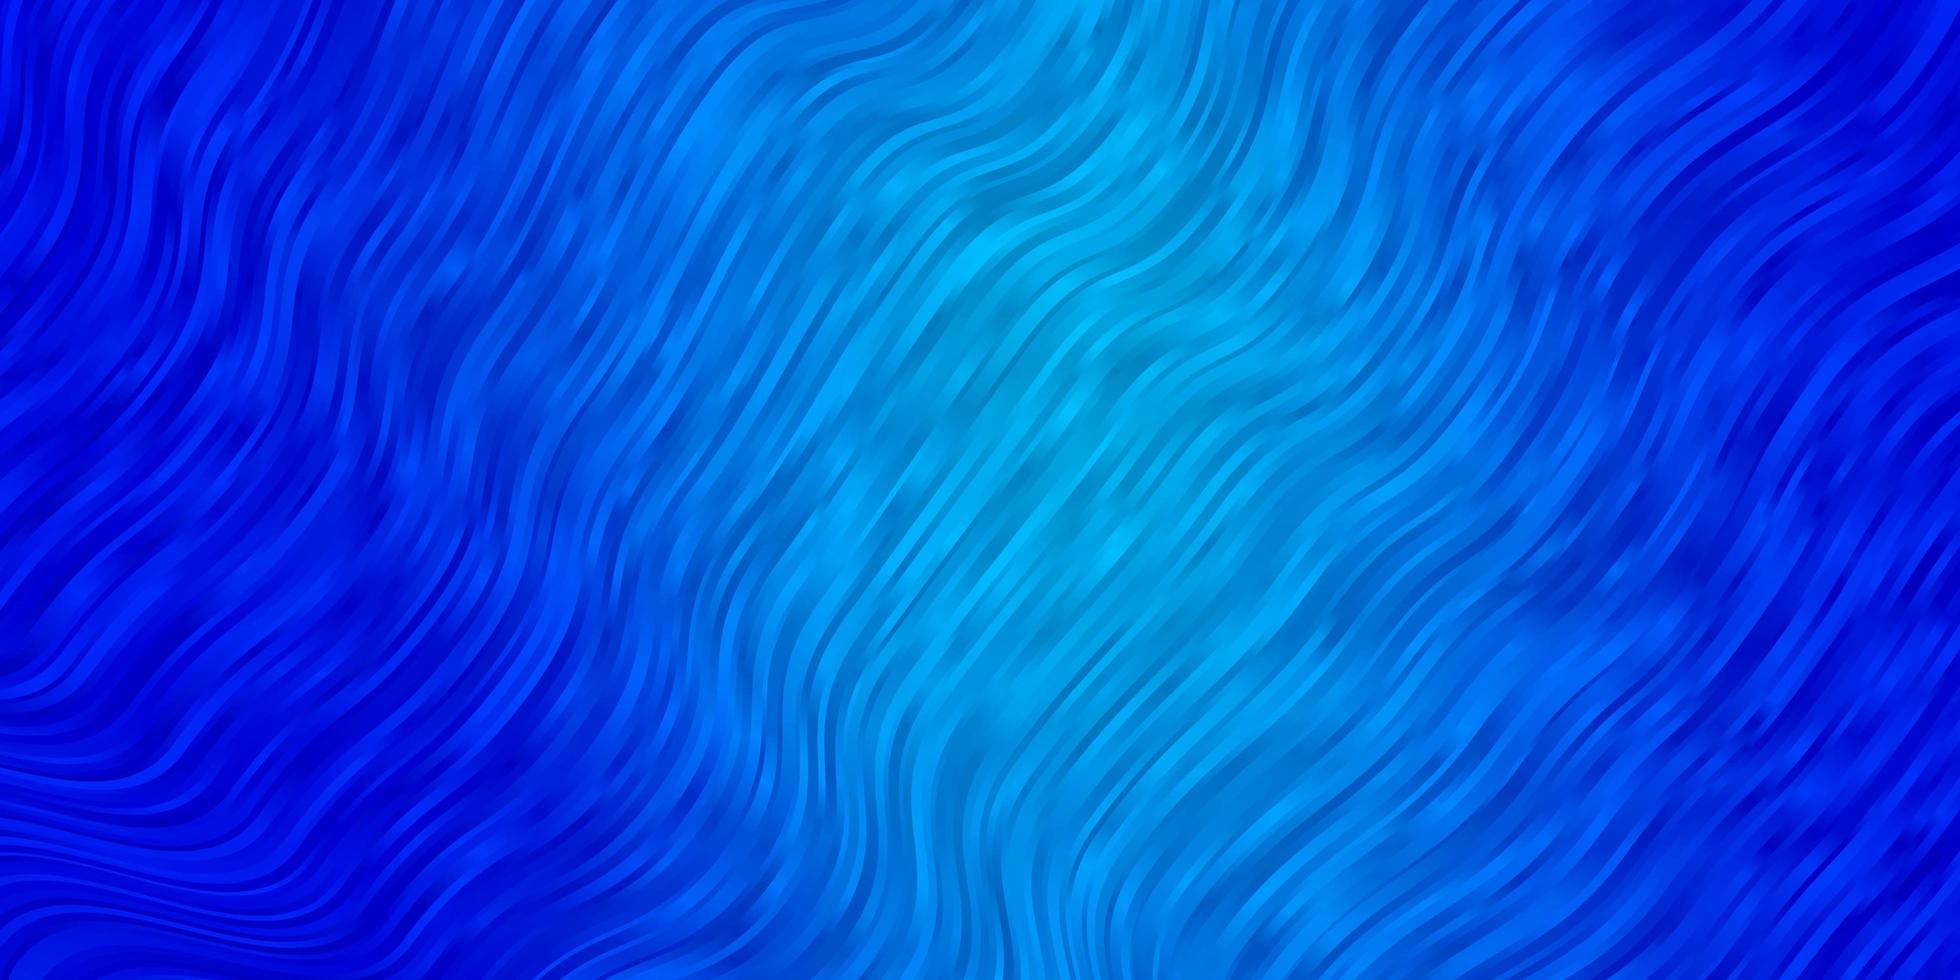 modelo de vetor azul claro com linhas irônicas.